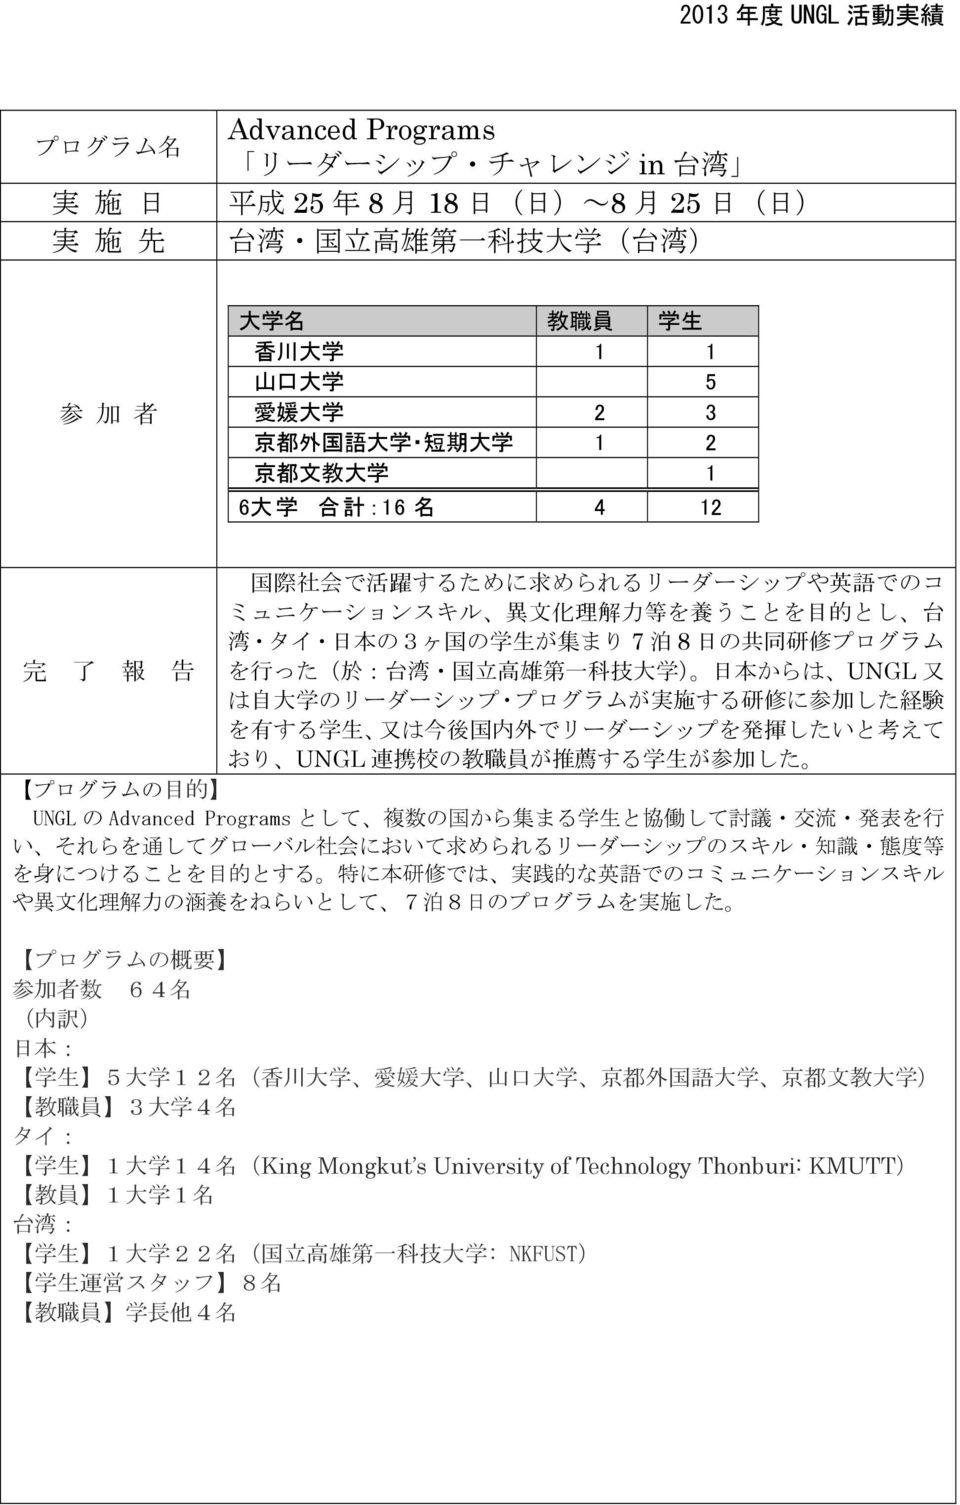 った( 於 : 台 湾 国 立 高 雄 第 一 科 技 大 学 ) 日 本 からは UNGL 又 は 自 大 学 のリーダーシップ プログラムが 実 施 する 研 修 に 参 加 した 経 験 を 有 する 学 生 又 は 今 後 国 内 外 でリーダーシップを 発 揮 したいと 考 えて おり UNGL 連 携 校 の 教 職 員 が 推 薦 する 学 生 が 参 加 した プログラムの 目